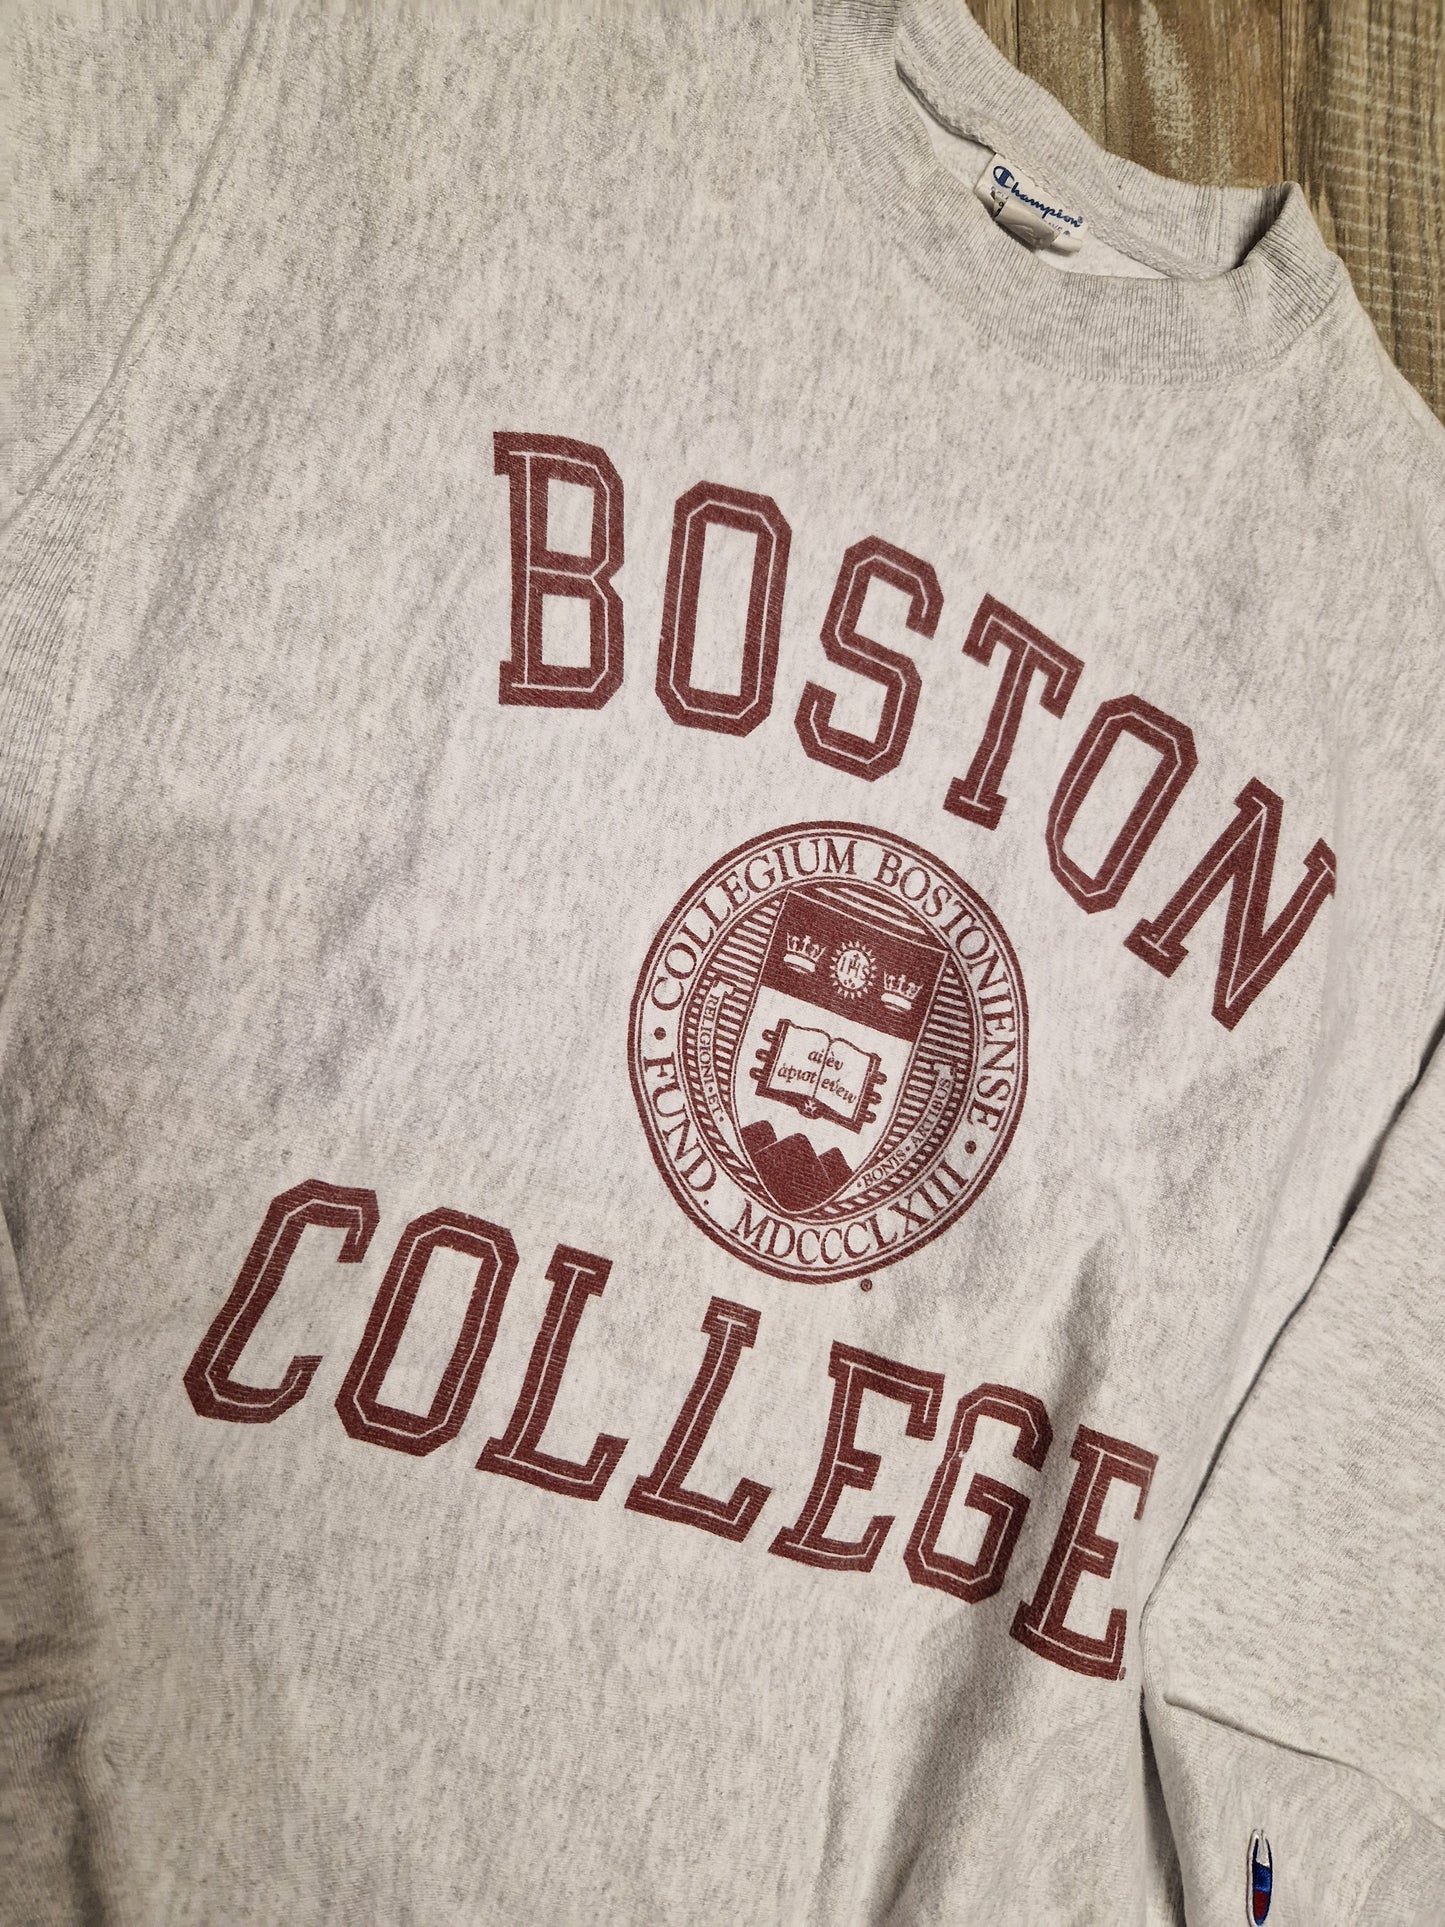 Boston College Sweater Size Small